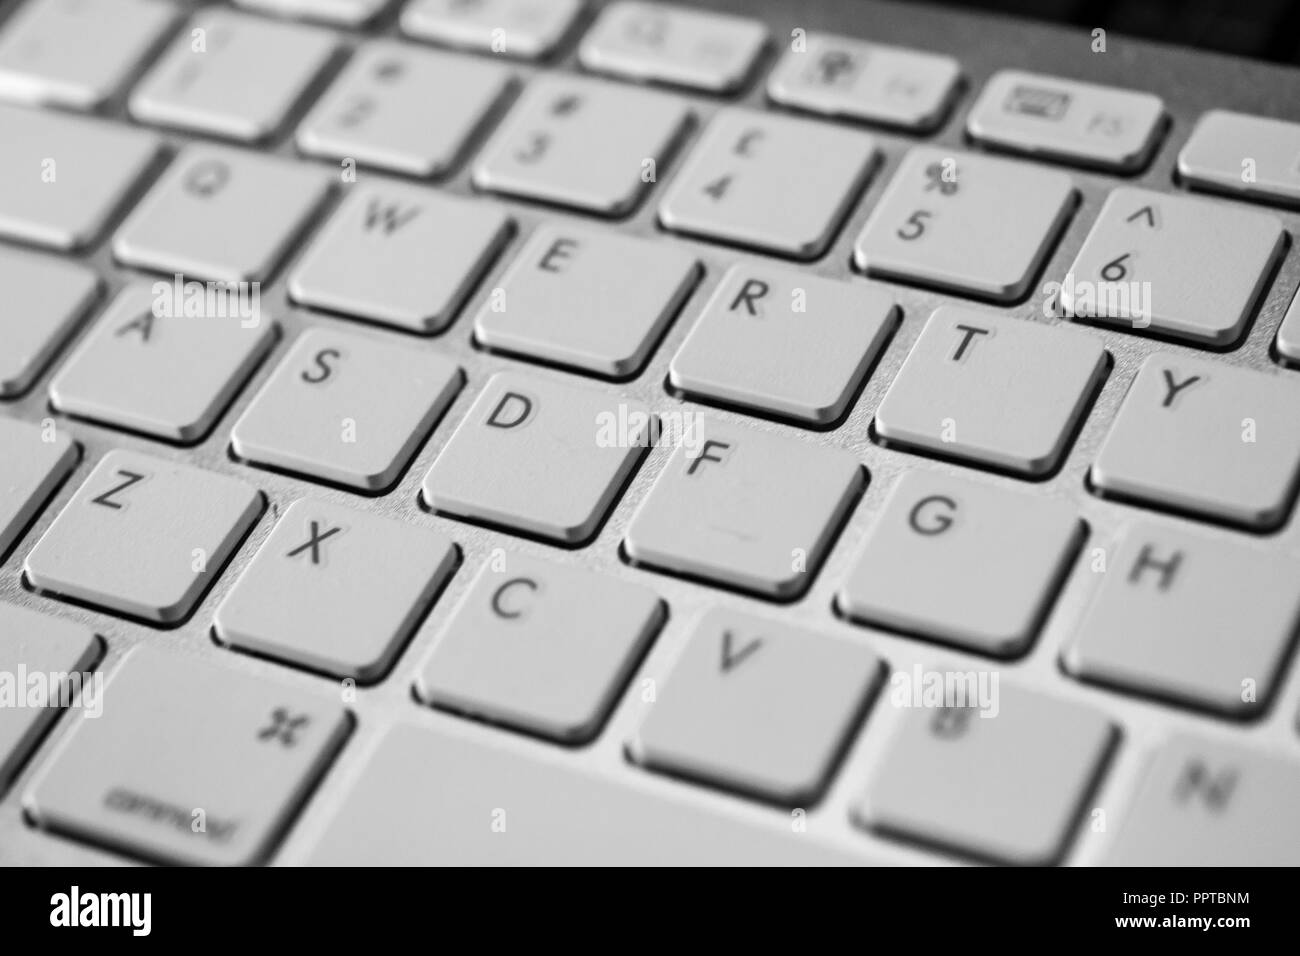 Cloesup einer QWERTZ-Tastatur des Computers in weiß mit schwarzen Zahlen und Buchstaben Stockfoto